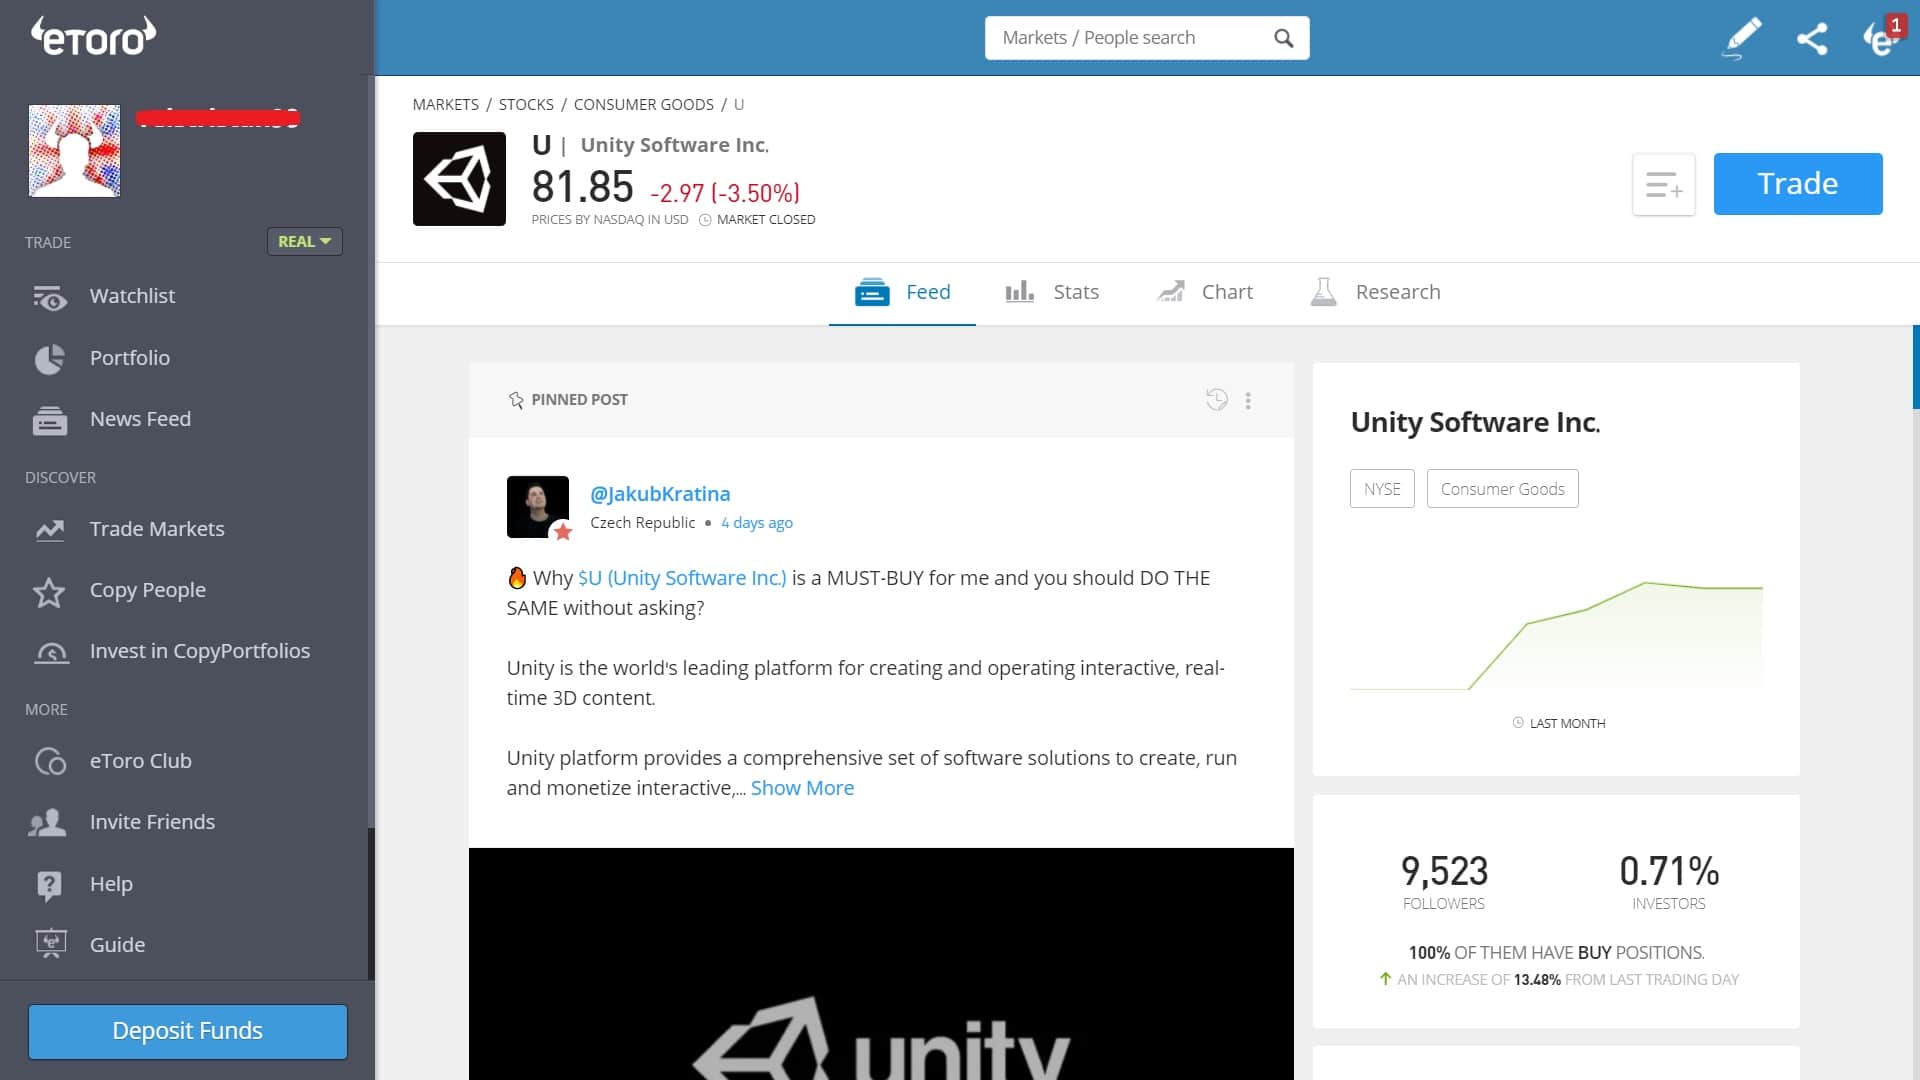 Unity Software stock trading on eToro's platform